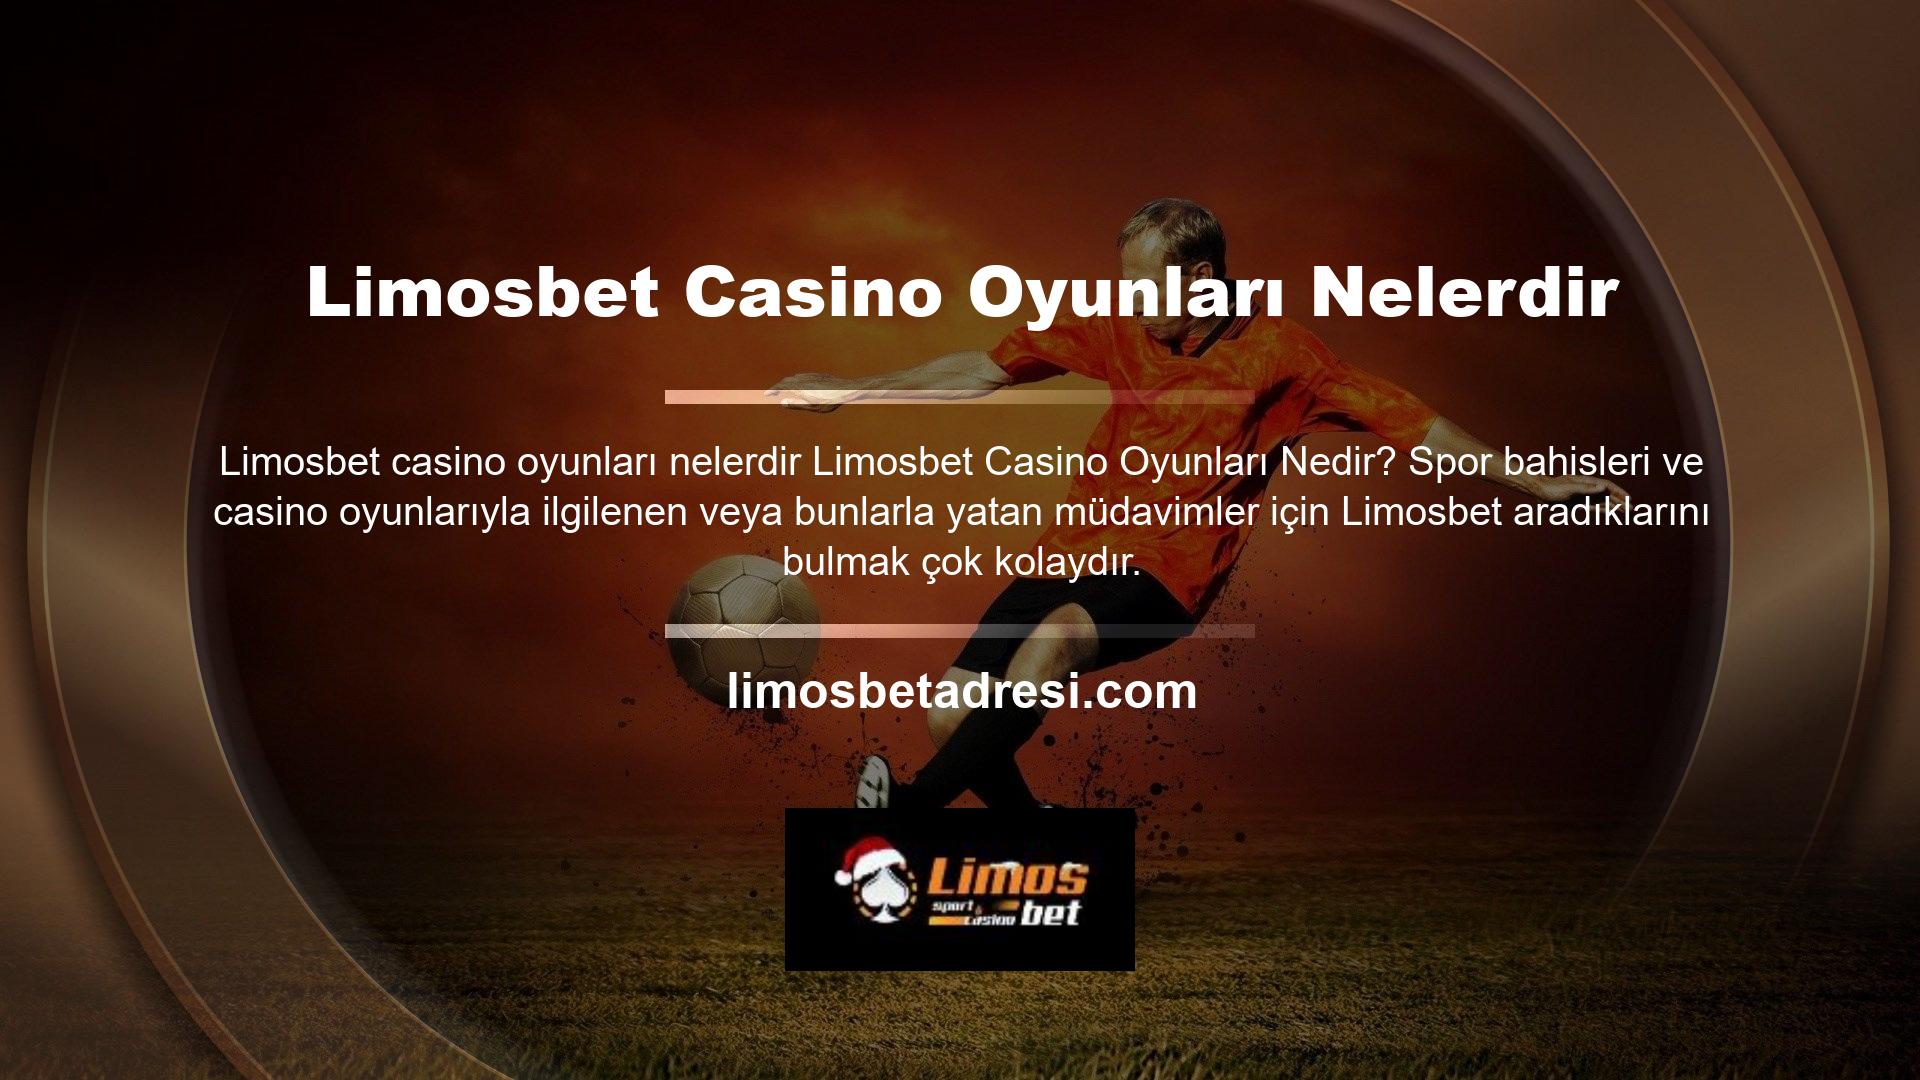 Limosbet, süredir online casino pazarında her zevke uygun ucuz bahis ve casino oyunları sunmaktadır